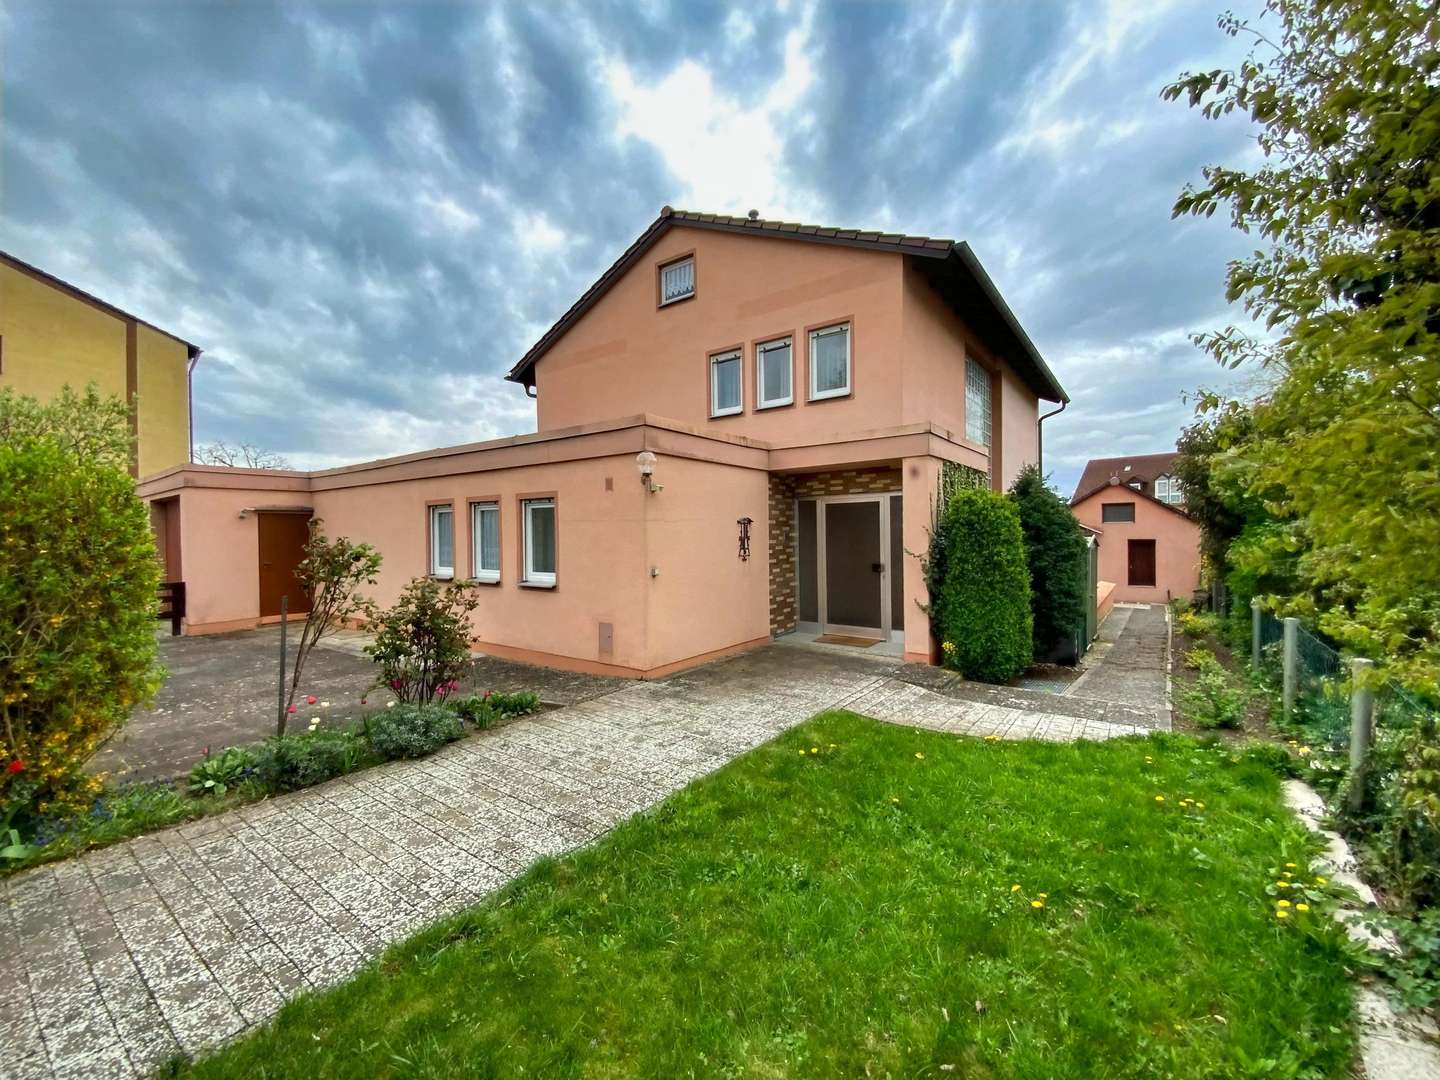 Gepflegtes Haus - großes Grundstück - traumhafte Lage! - Einfamilienhaus in 91710 Gunzenhausen mit 152m² kaufen